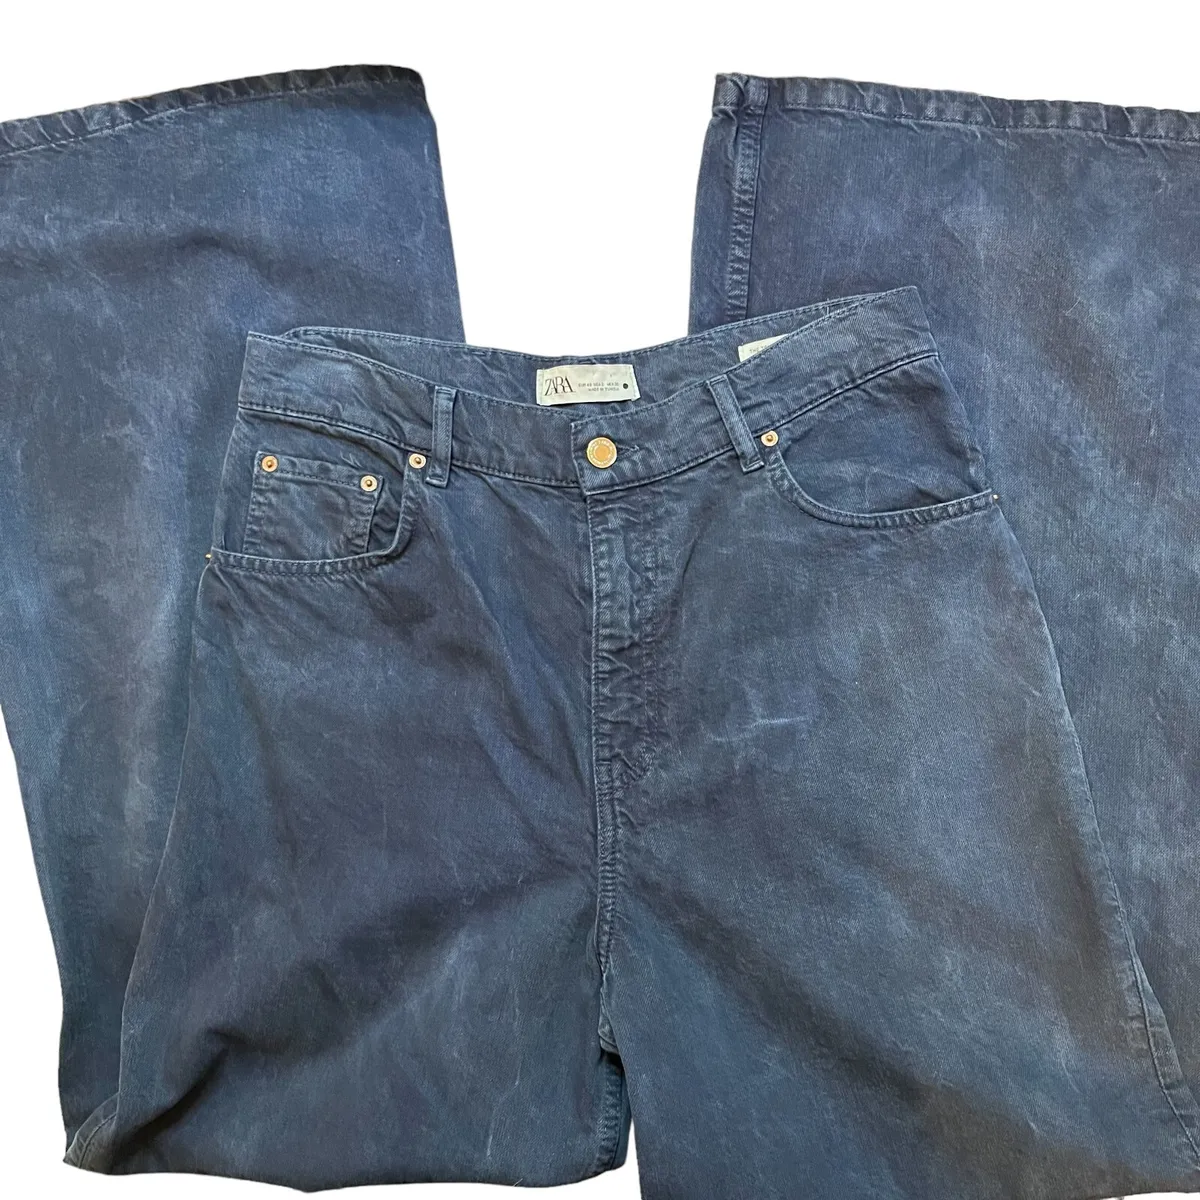 Ksubi Van Winkle Marbled Jeans - Black Faded Marble Wash | Garmentory